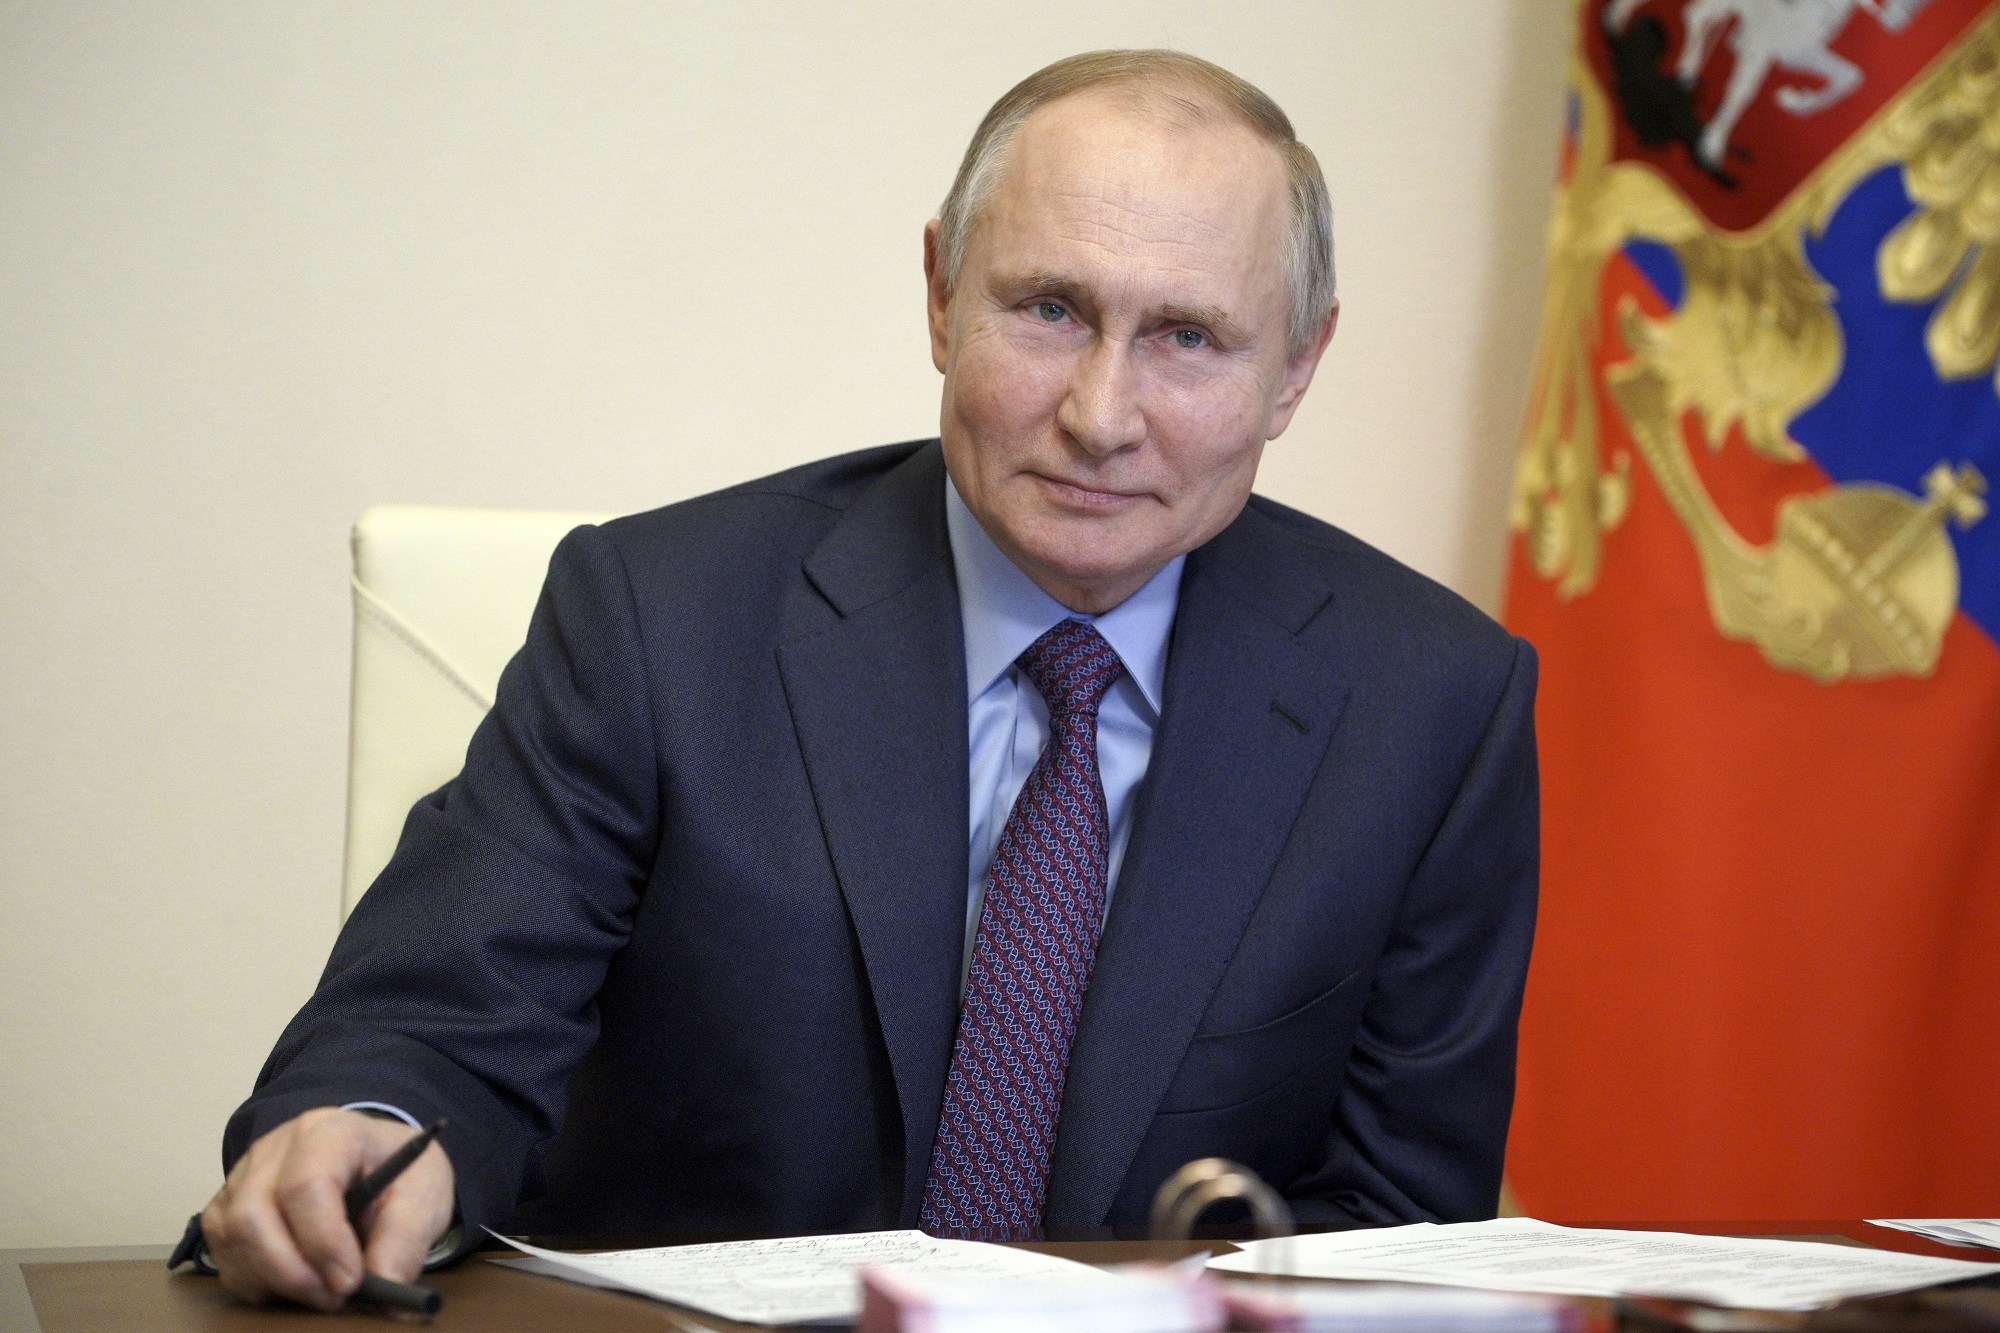 Ο Πούτιν δεν «βλέπει καμία ανάγκη» για συνομιλίες με τον Μπάιντεν – Δηλώνει ότι δεν μετανιώνει για τον πόλεμο στην Ουκρανία